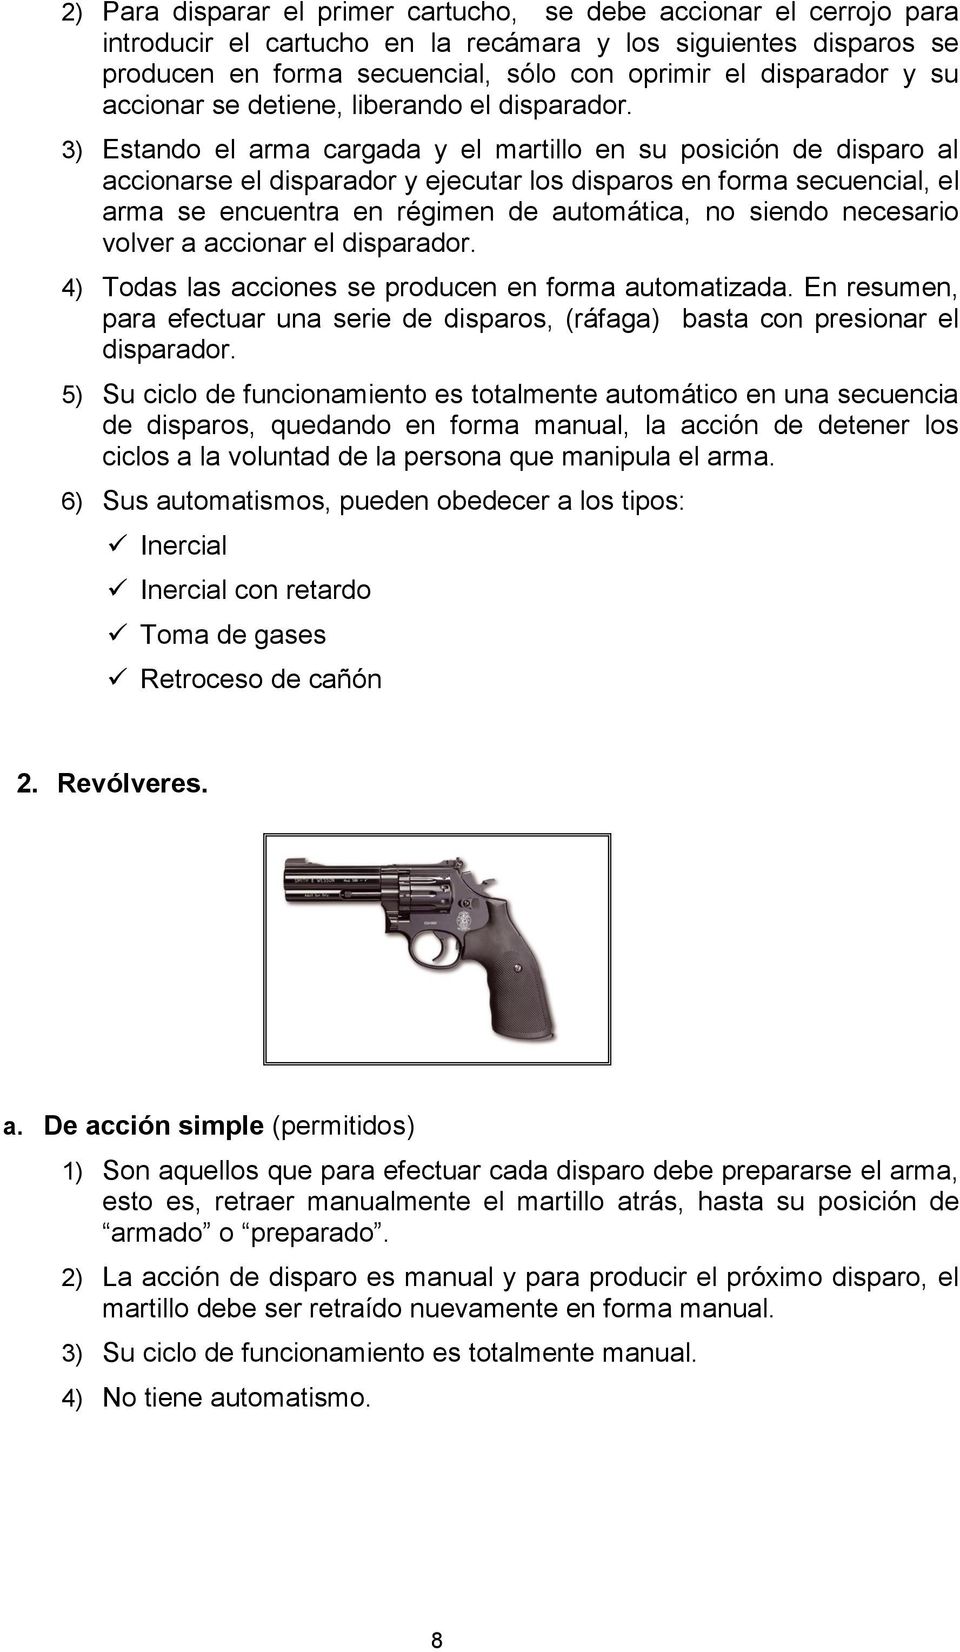 3) Estando el arma cargada y el martillo en su posición de disparo al accionarse el disparador y ejecutar los disparos en forma secuencial, el arma se encuentra en régimen de automática, no siendo